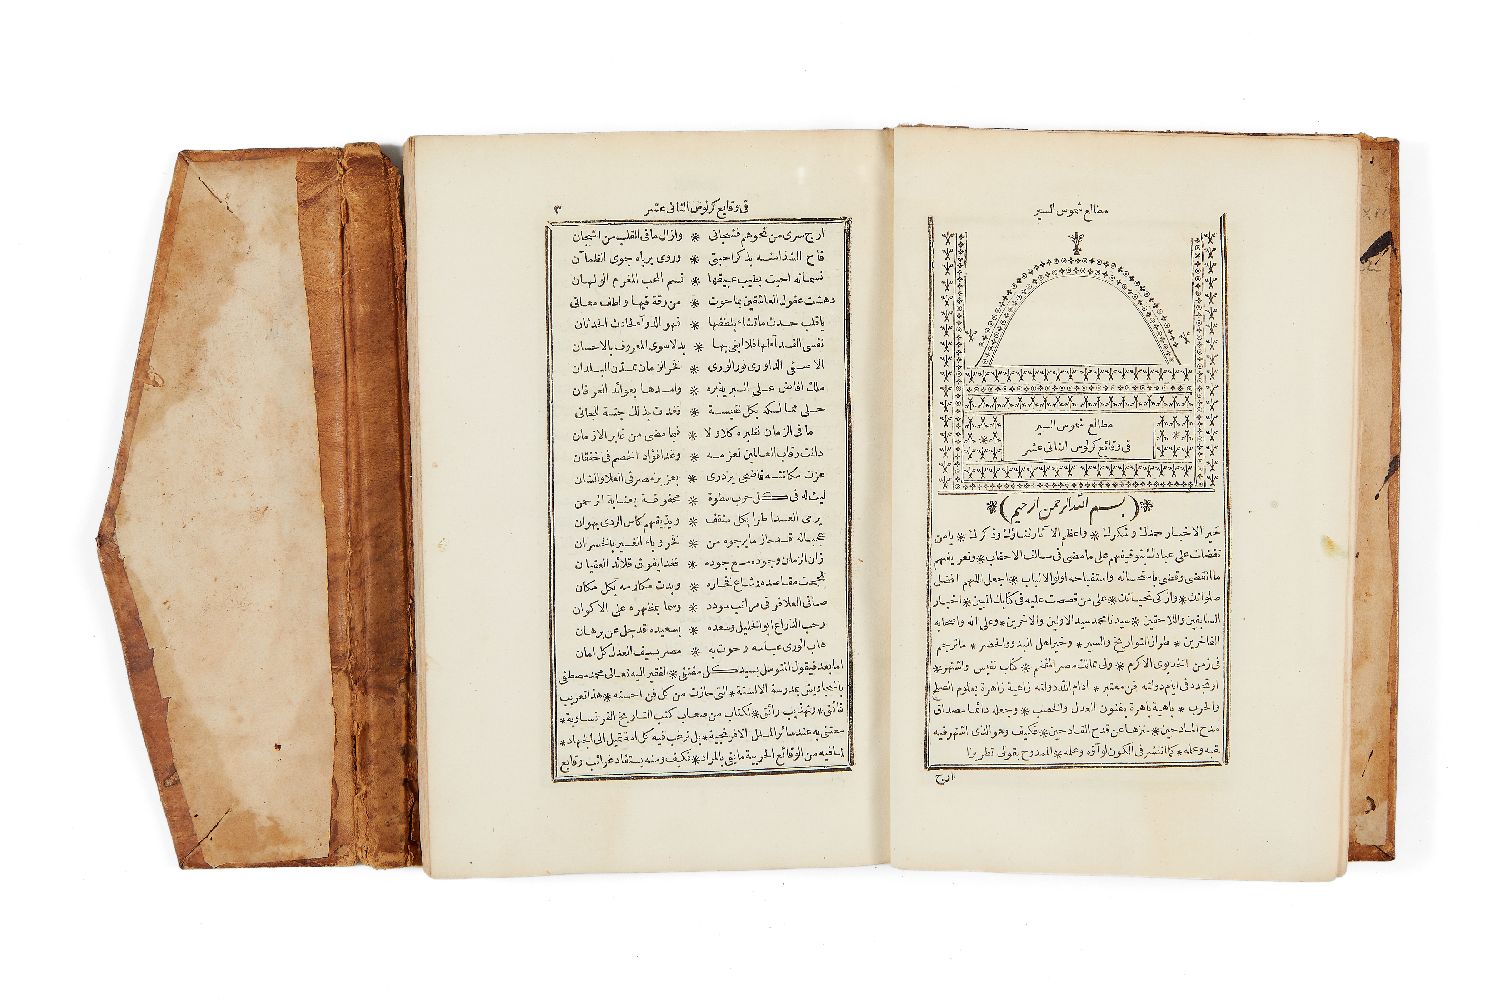 Mara'li Shumus al-Siyar fi Waqa'i Karlus al-thani 'ashar, being an Arabic translation of Voltaire'